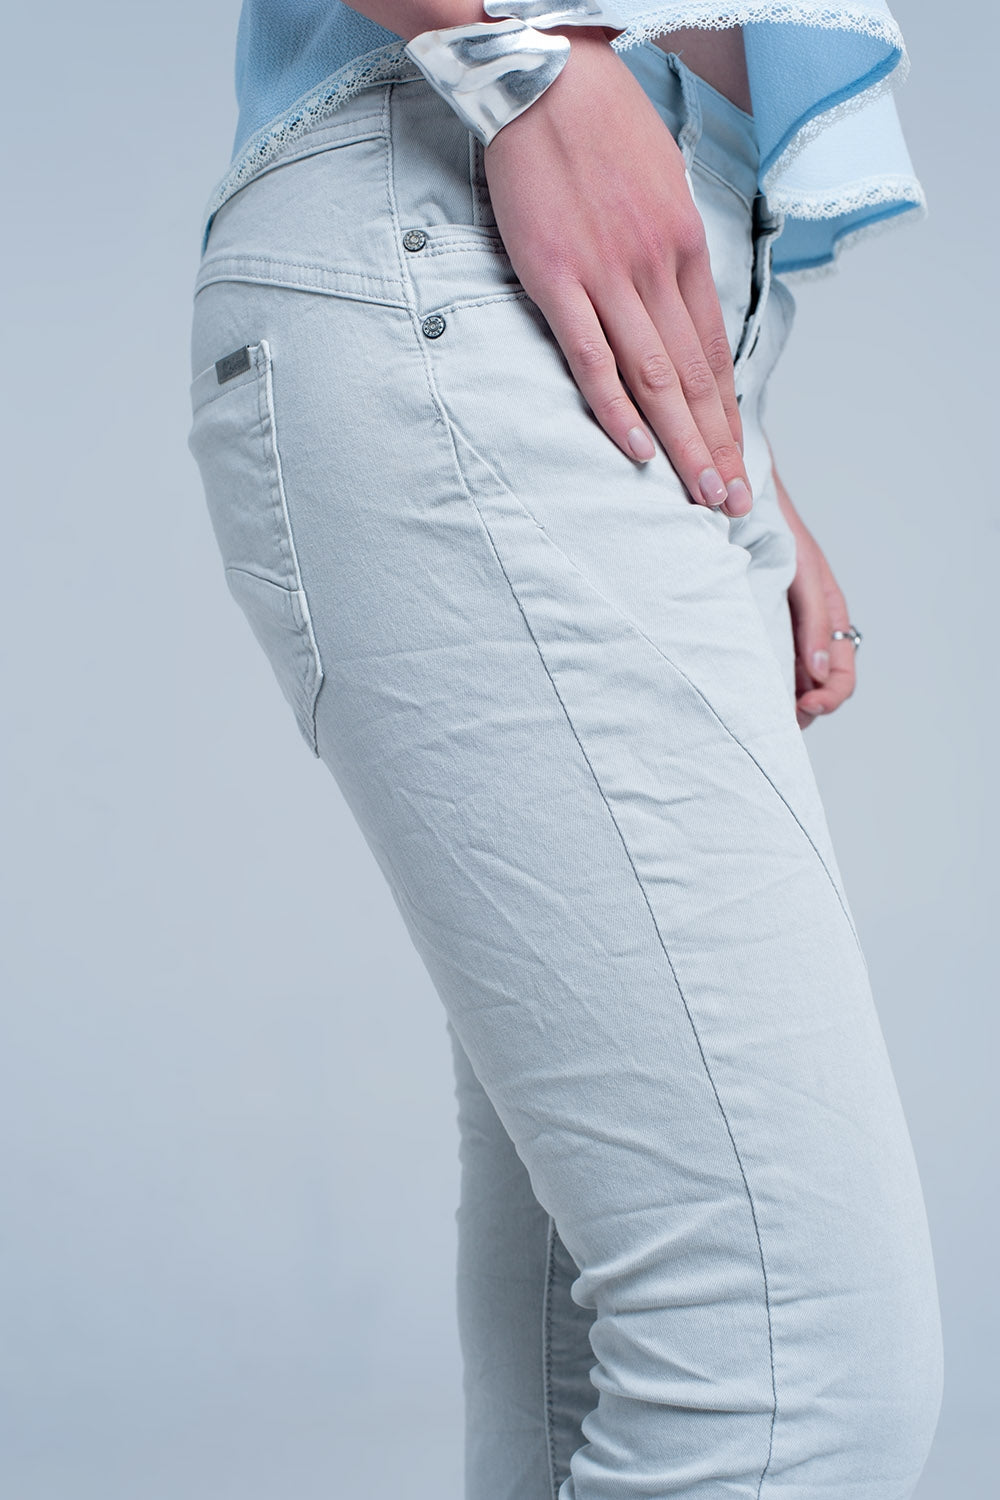 Q2-Grey Low rise boyfriend jeans-Jeans